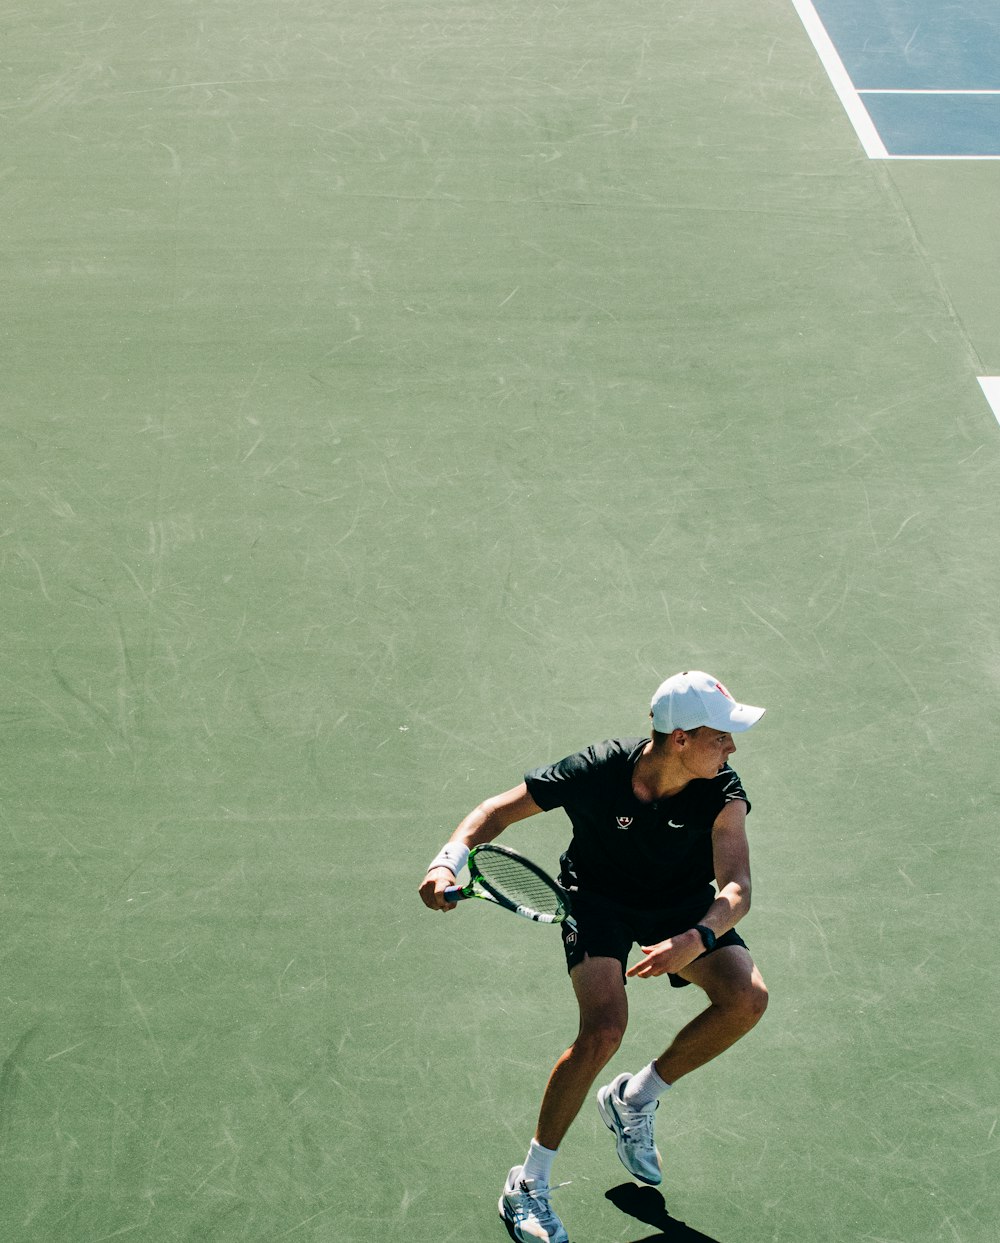 テニスコートでテニスラケットを持つ女性